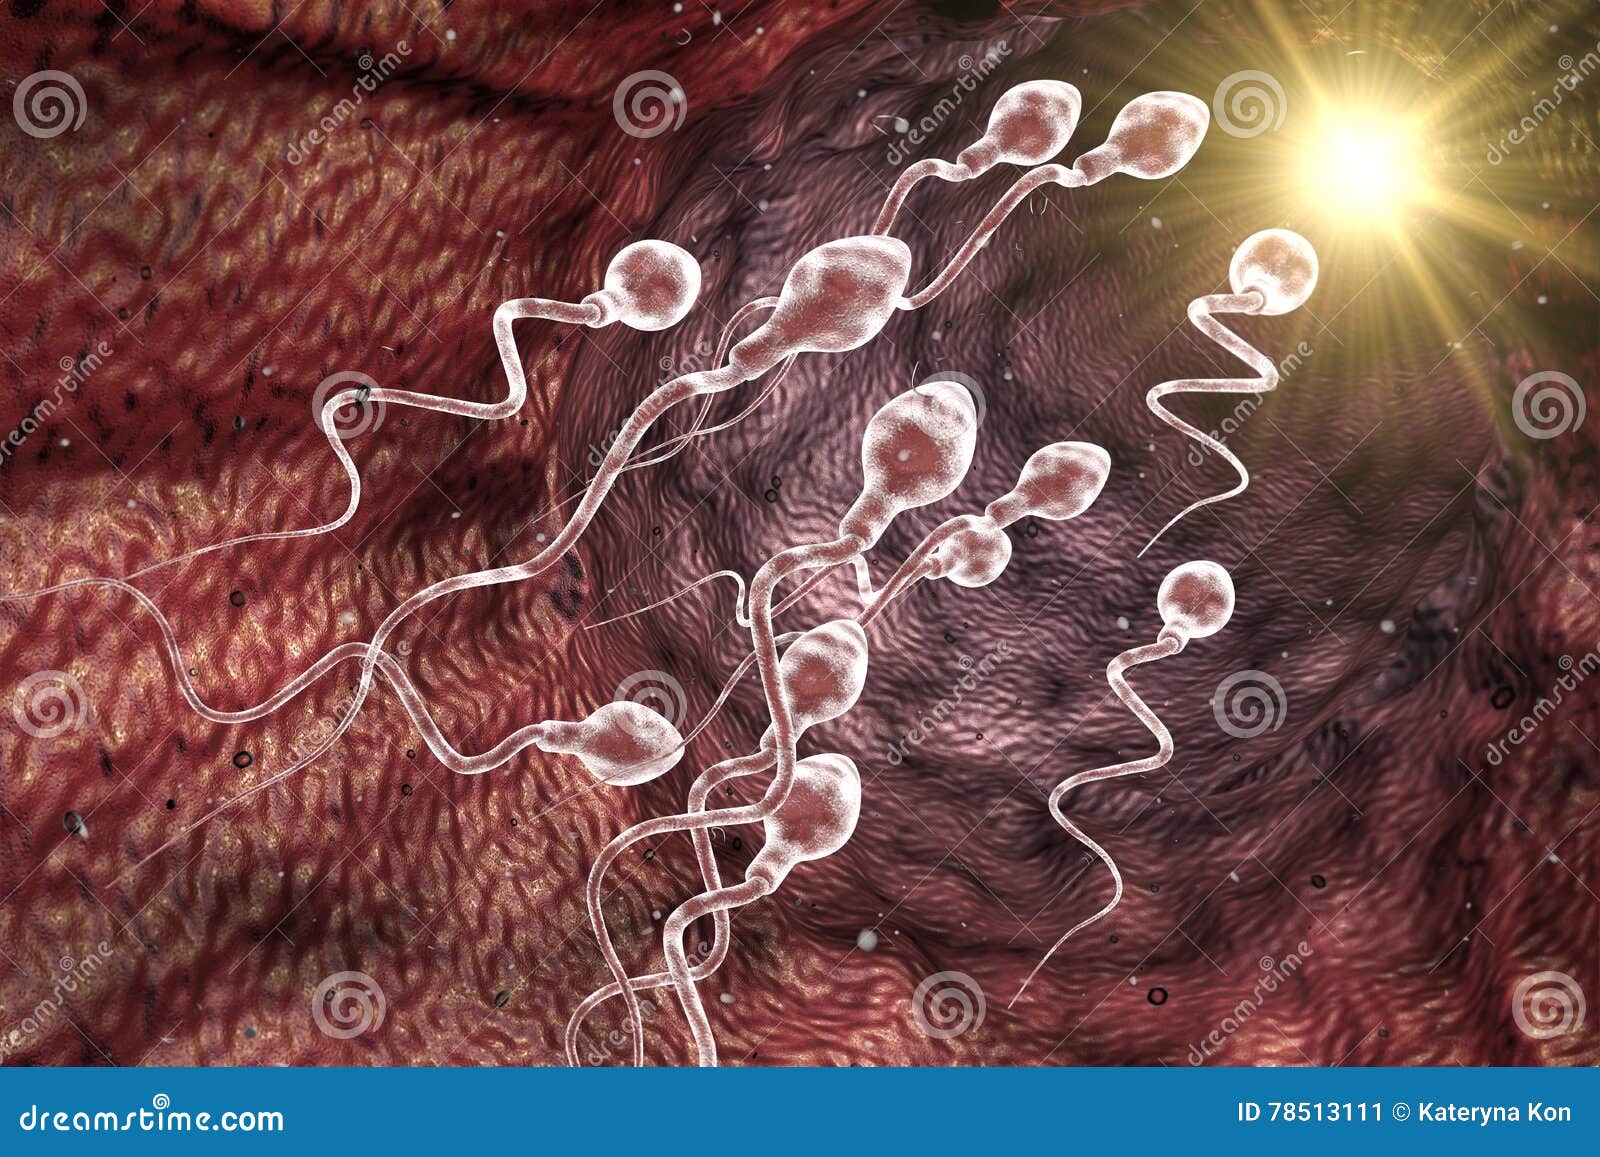 сперма как попасть матки фото 34